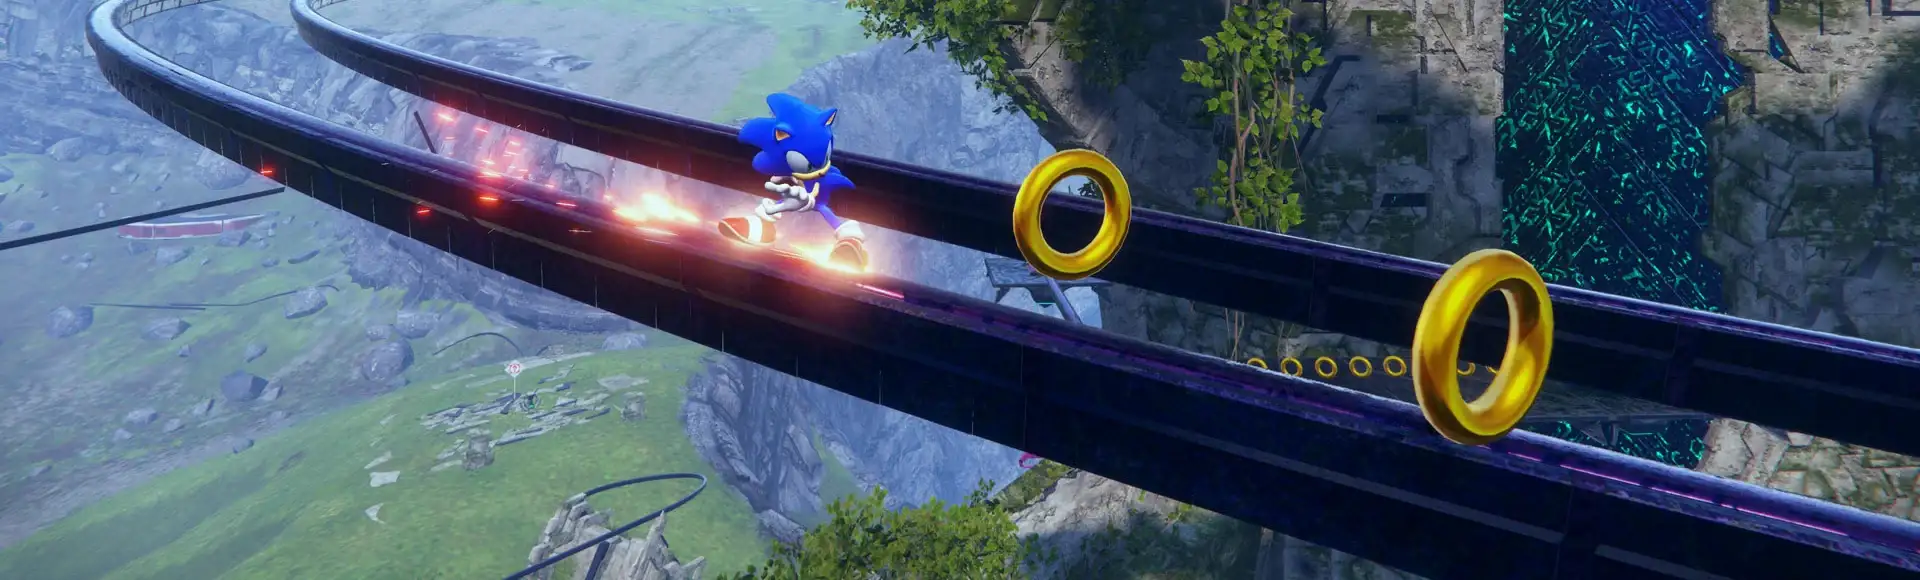 Jogo Sonic Unleashed Xbox 360 Sega em Promoção é no Buscapé